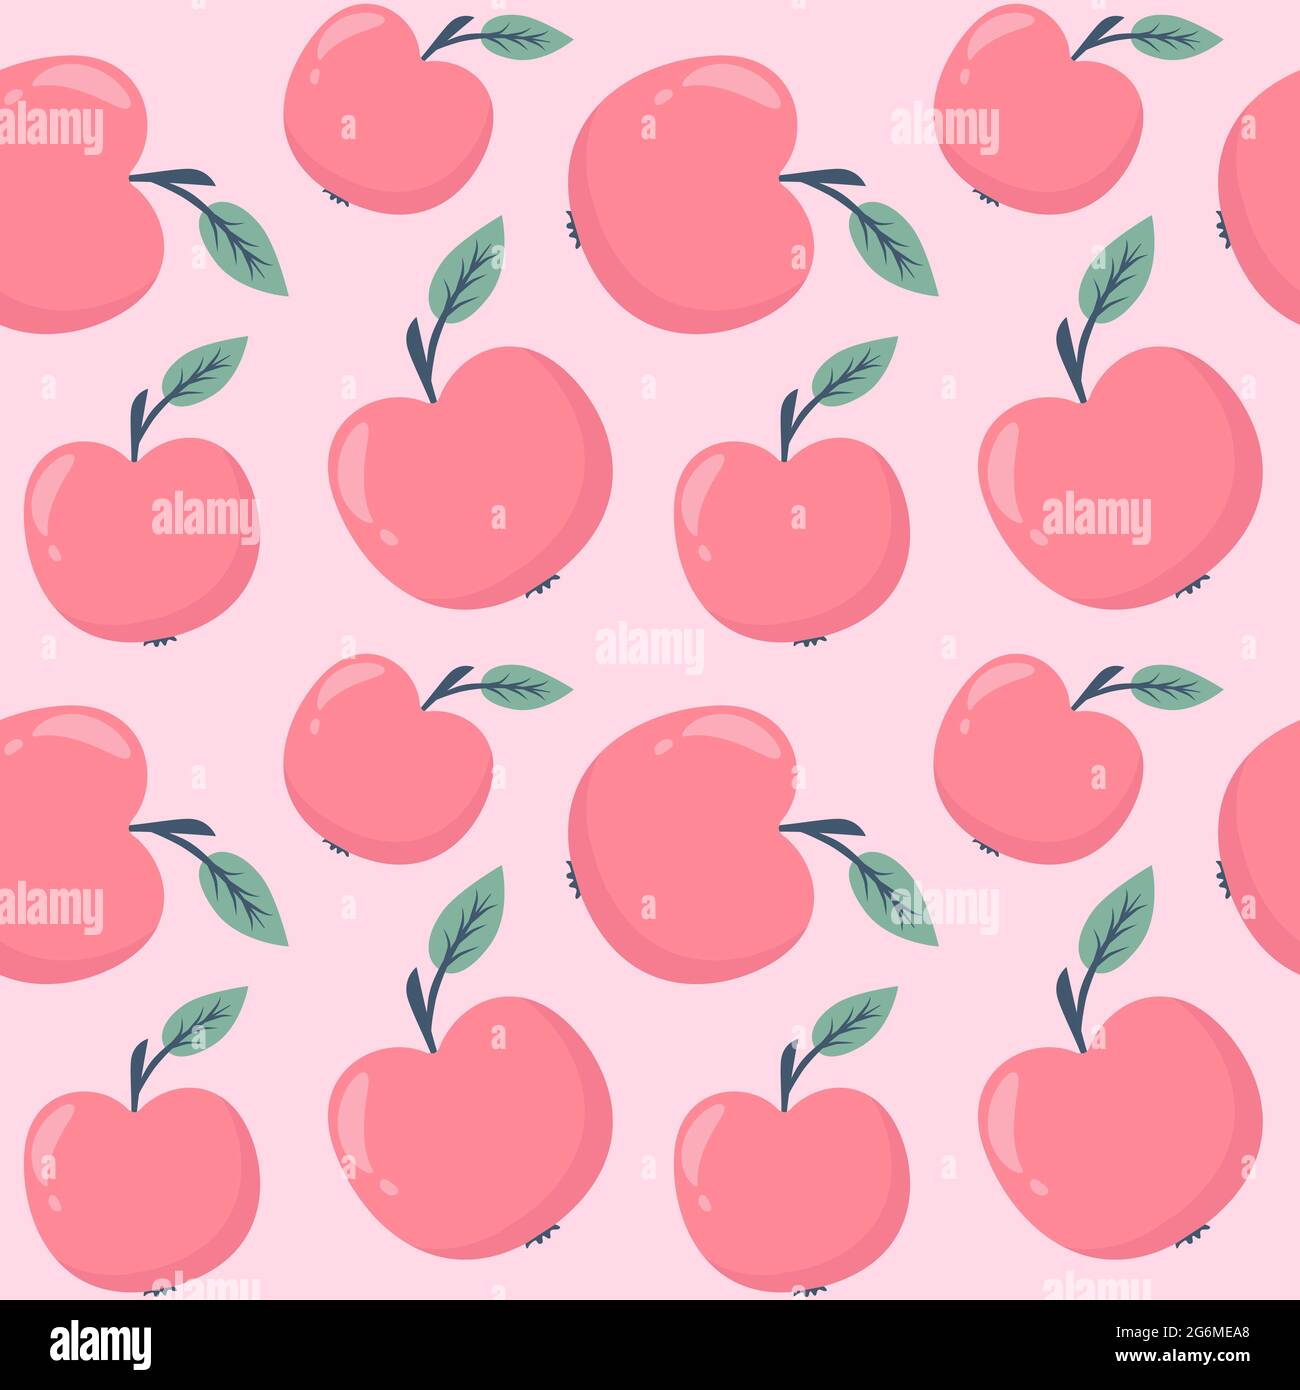 Cute pink Apple